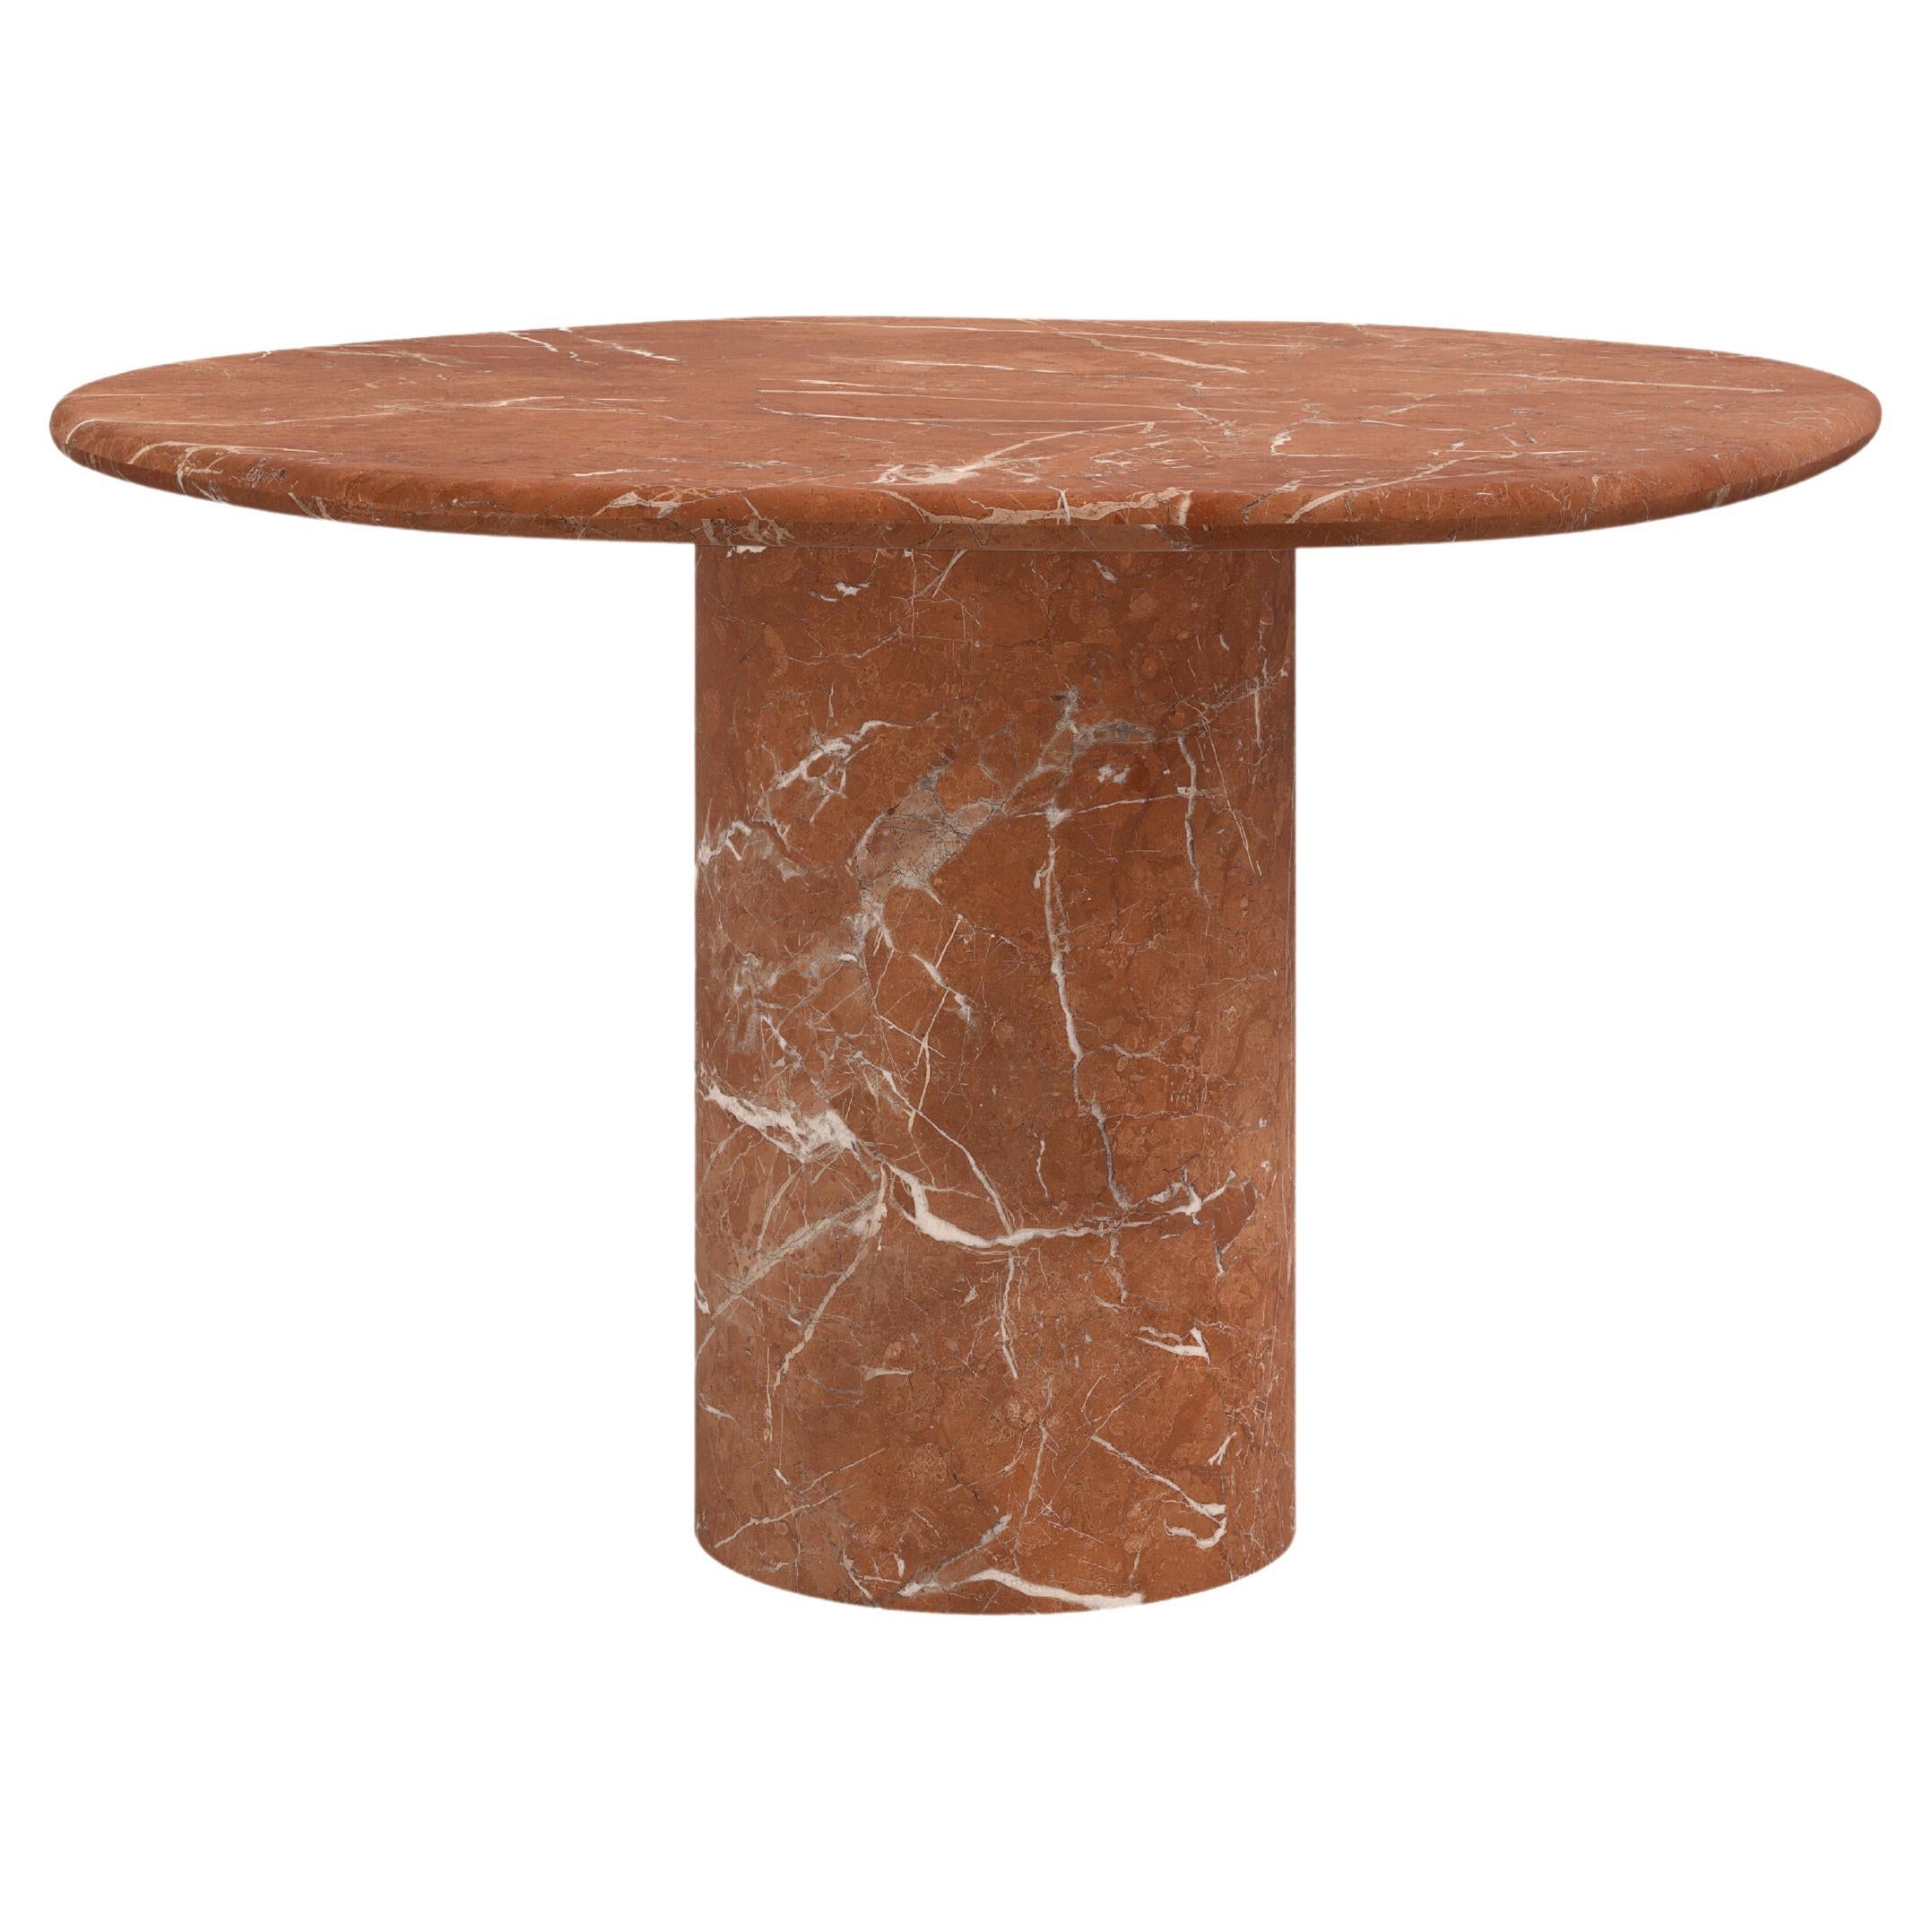 FORM(LA) Lago Round Dining Table 54”L x 54”W x 30”H Rojo Alicante Marble For Sale